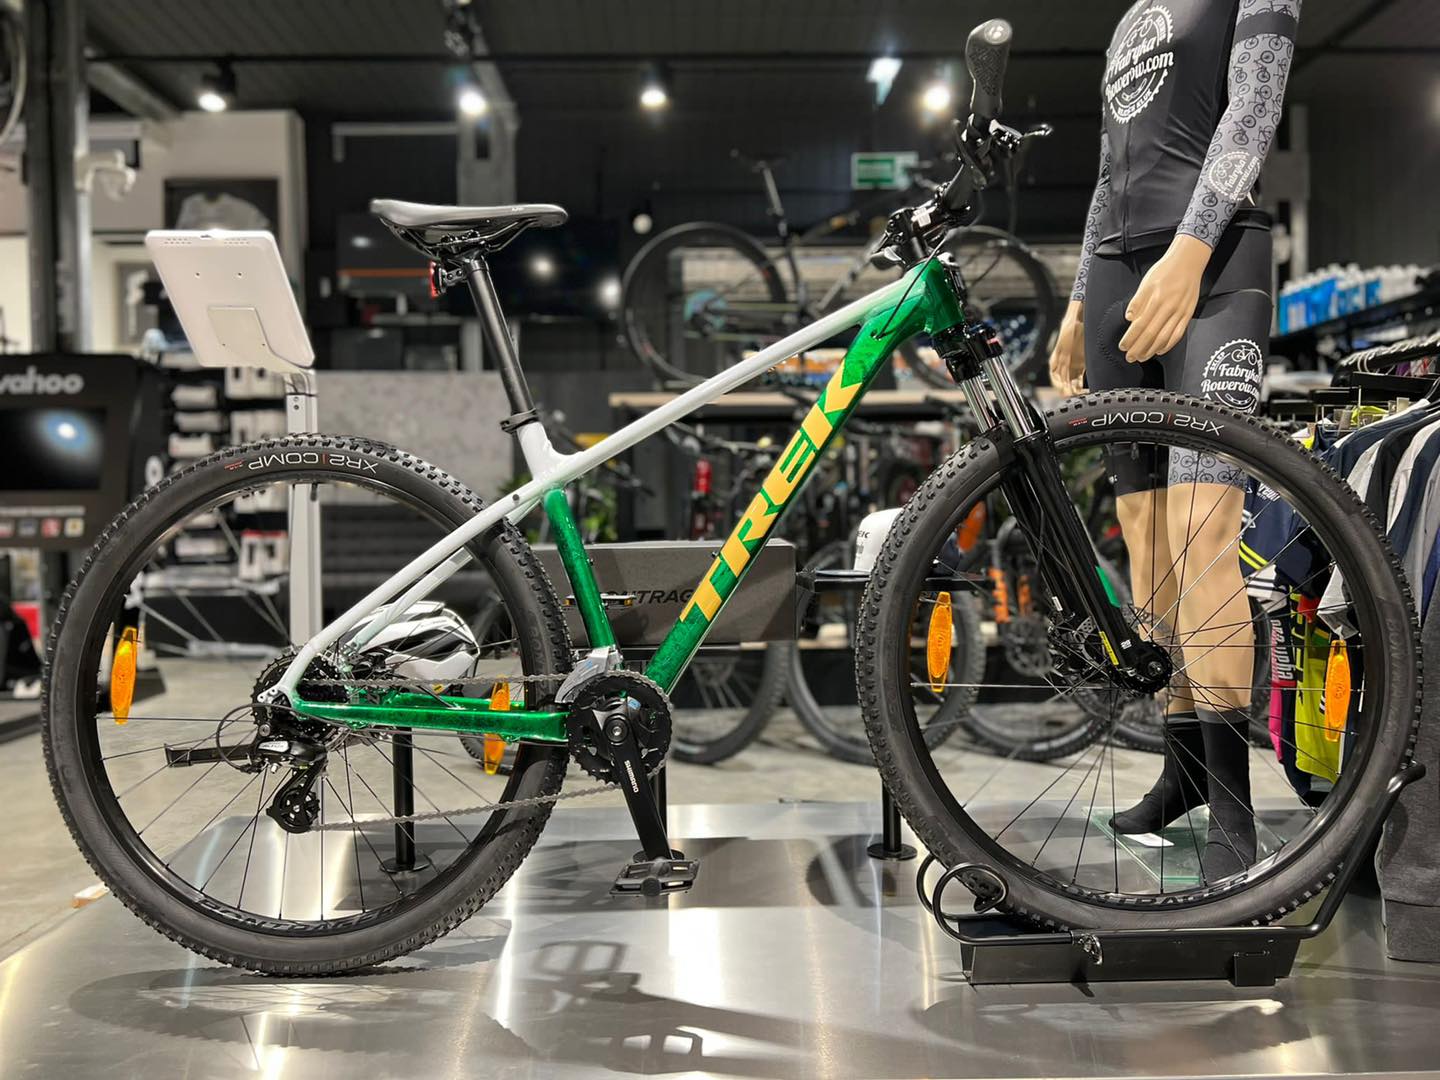 Przedstawiamy Państwu unikatowy rower TREK MARLIN w barwach naszego częstochowskiego klubu żużlowego WŁÓKNIARZ.